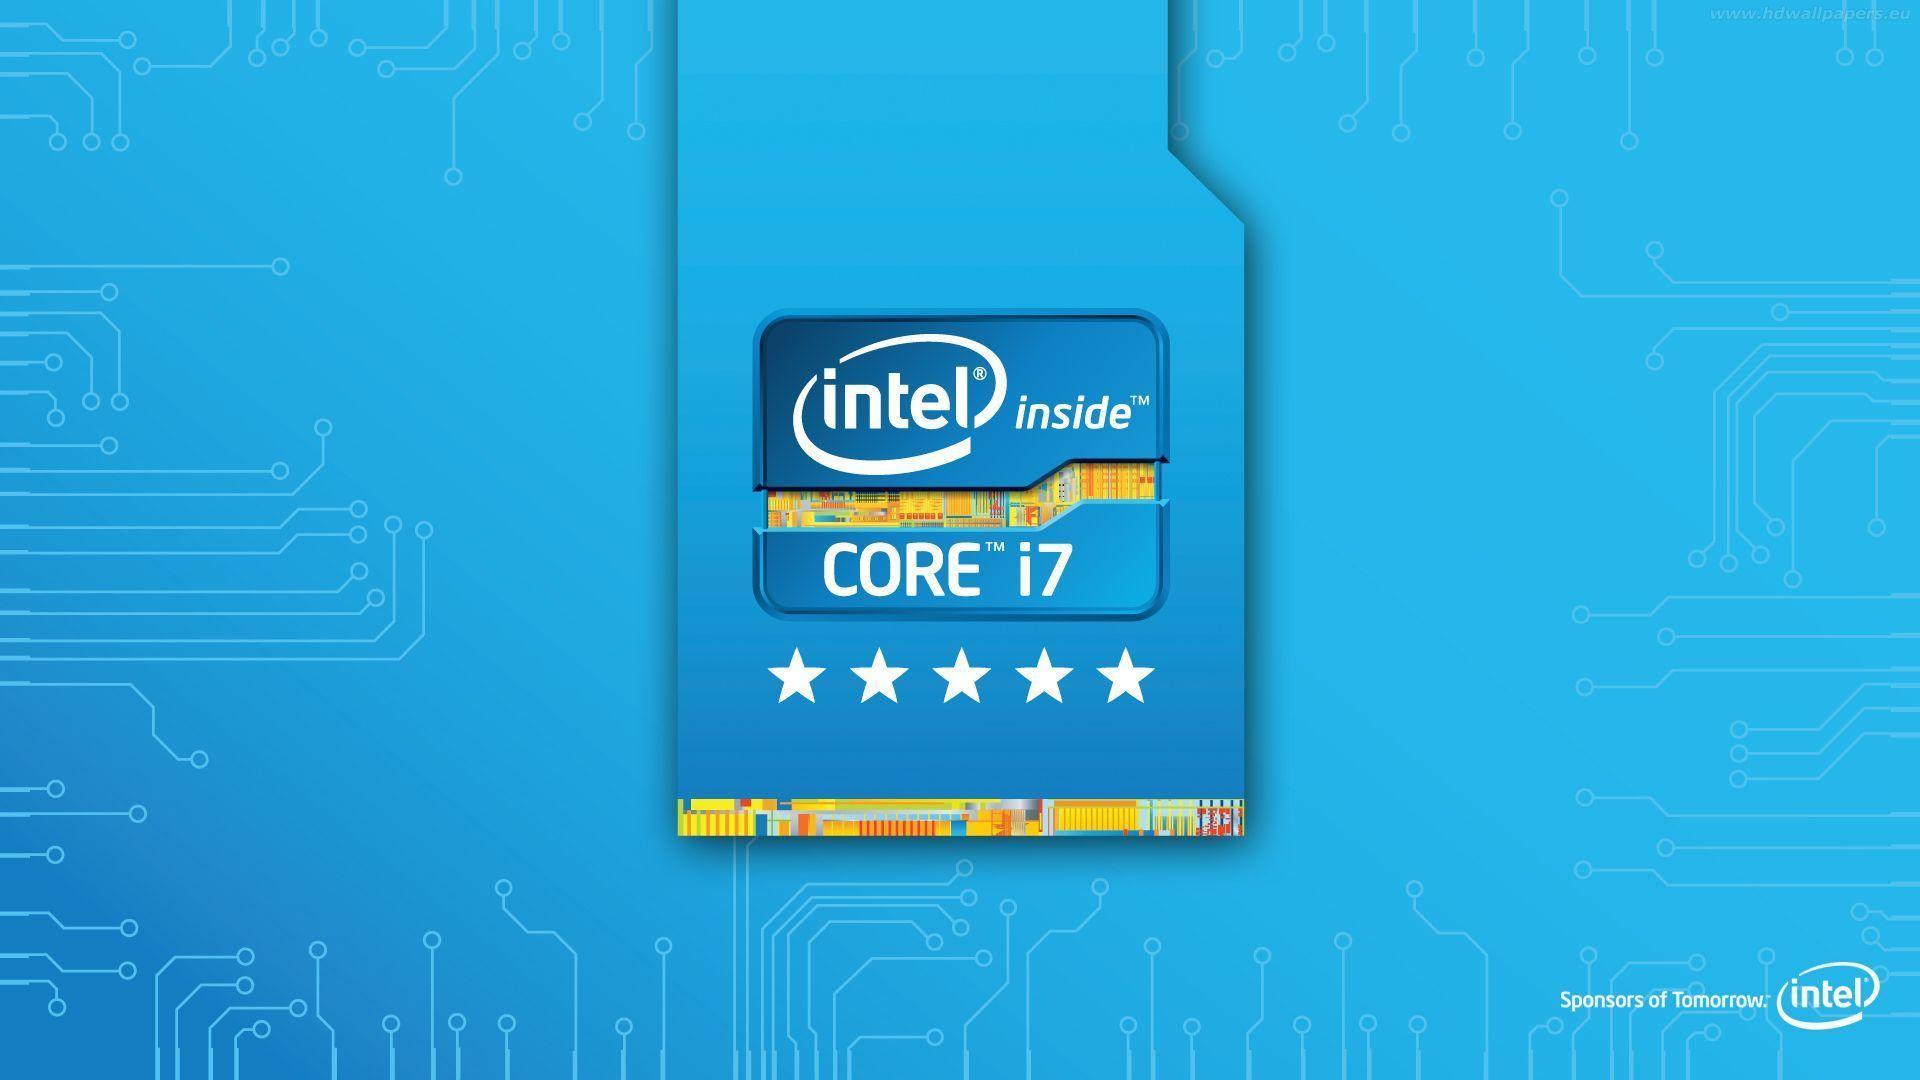 Wallpaper For > Intel Core I7 Wallpaper